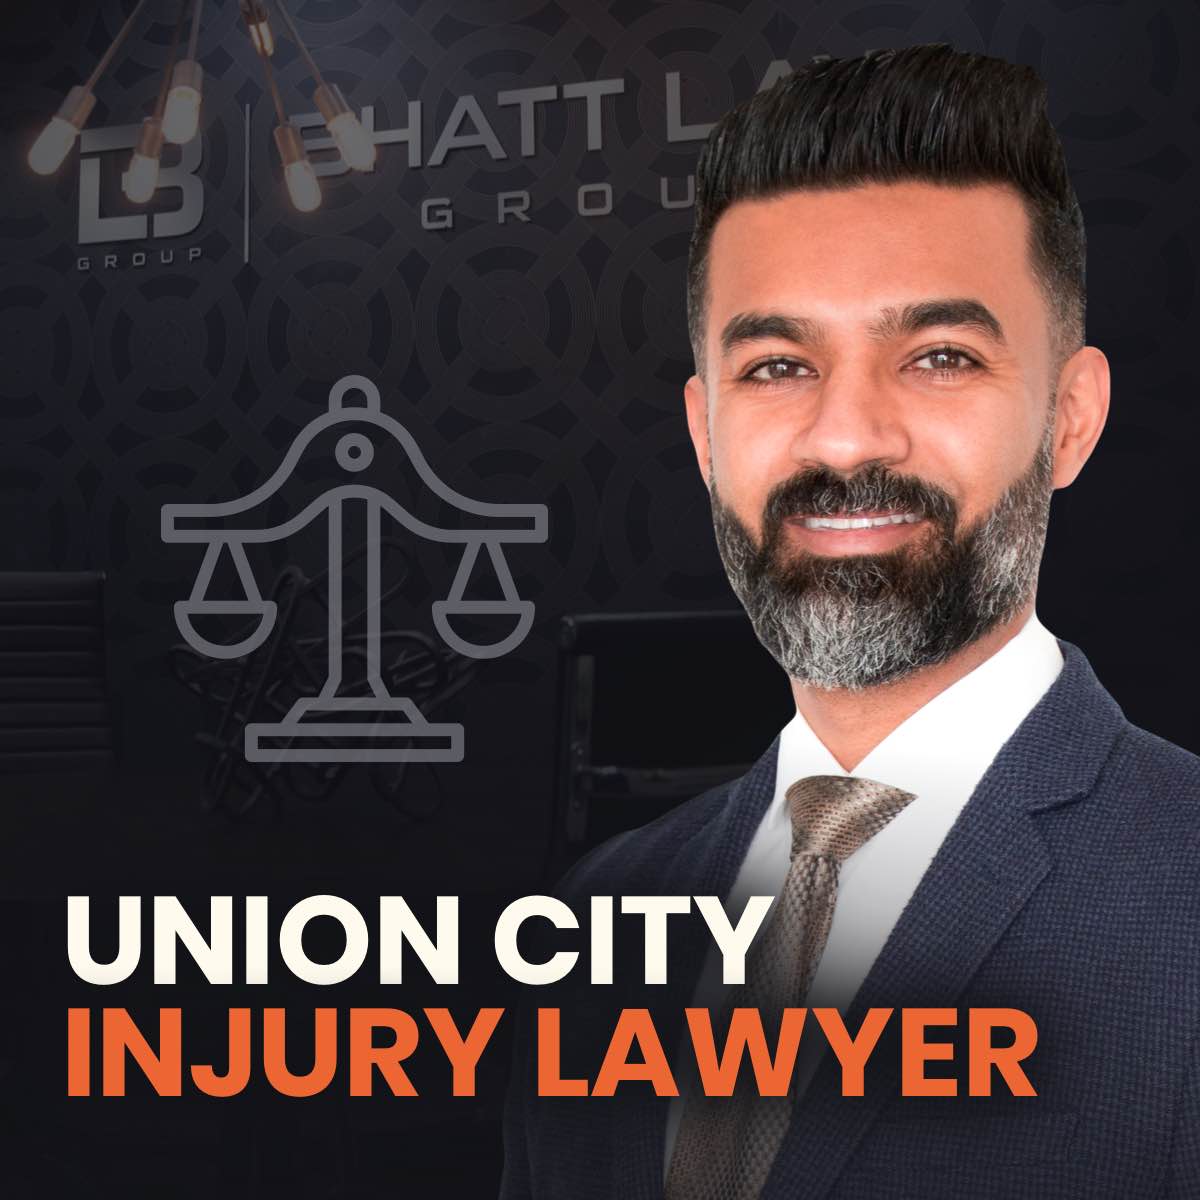 Union City Injury Lawyer